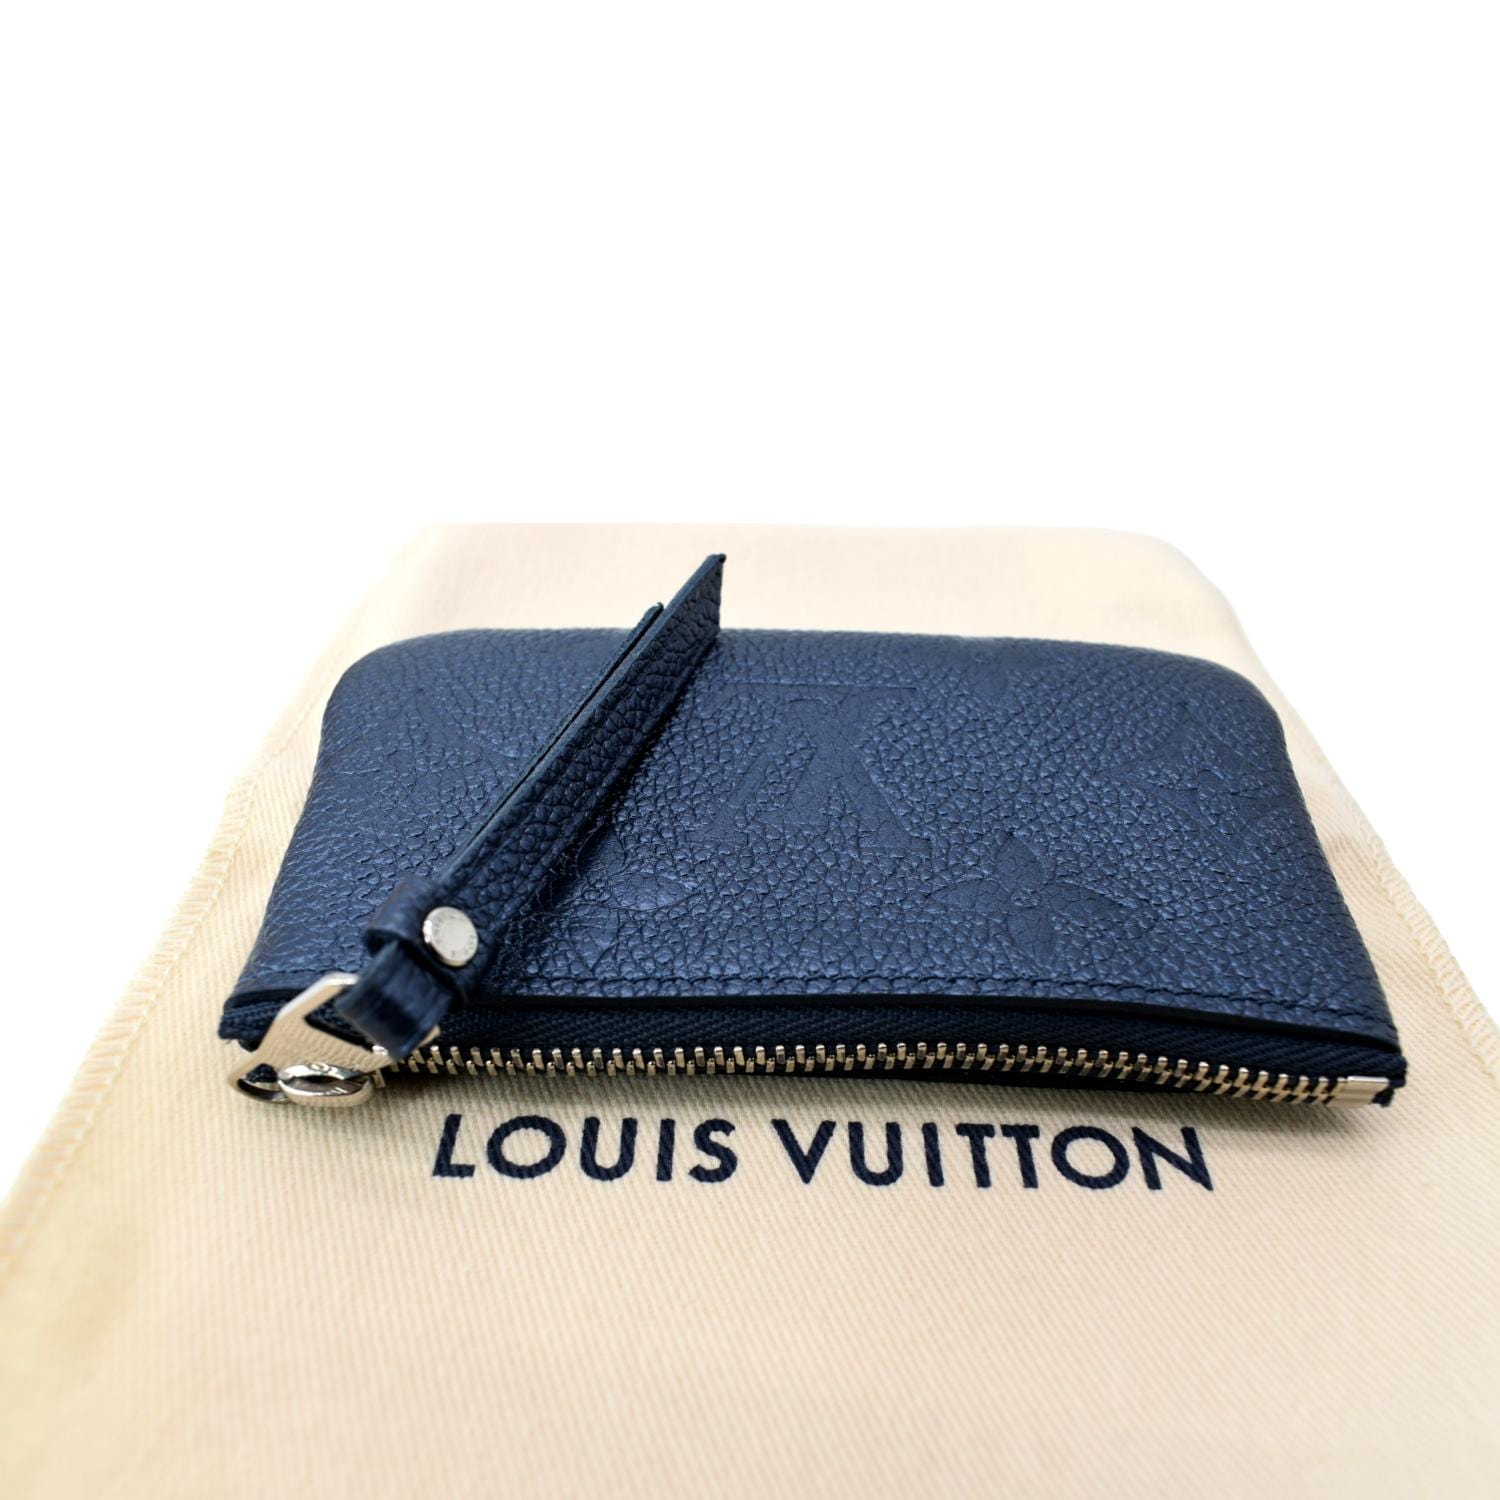 Louis Vuitton Empreinte Key Pouch - Black Wallets, Accessories - LOU37389